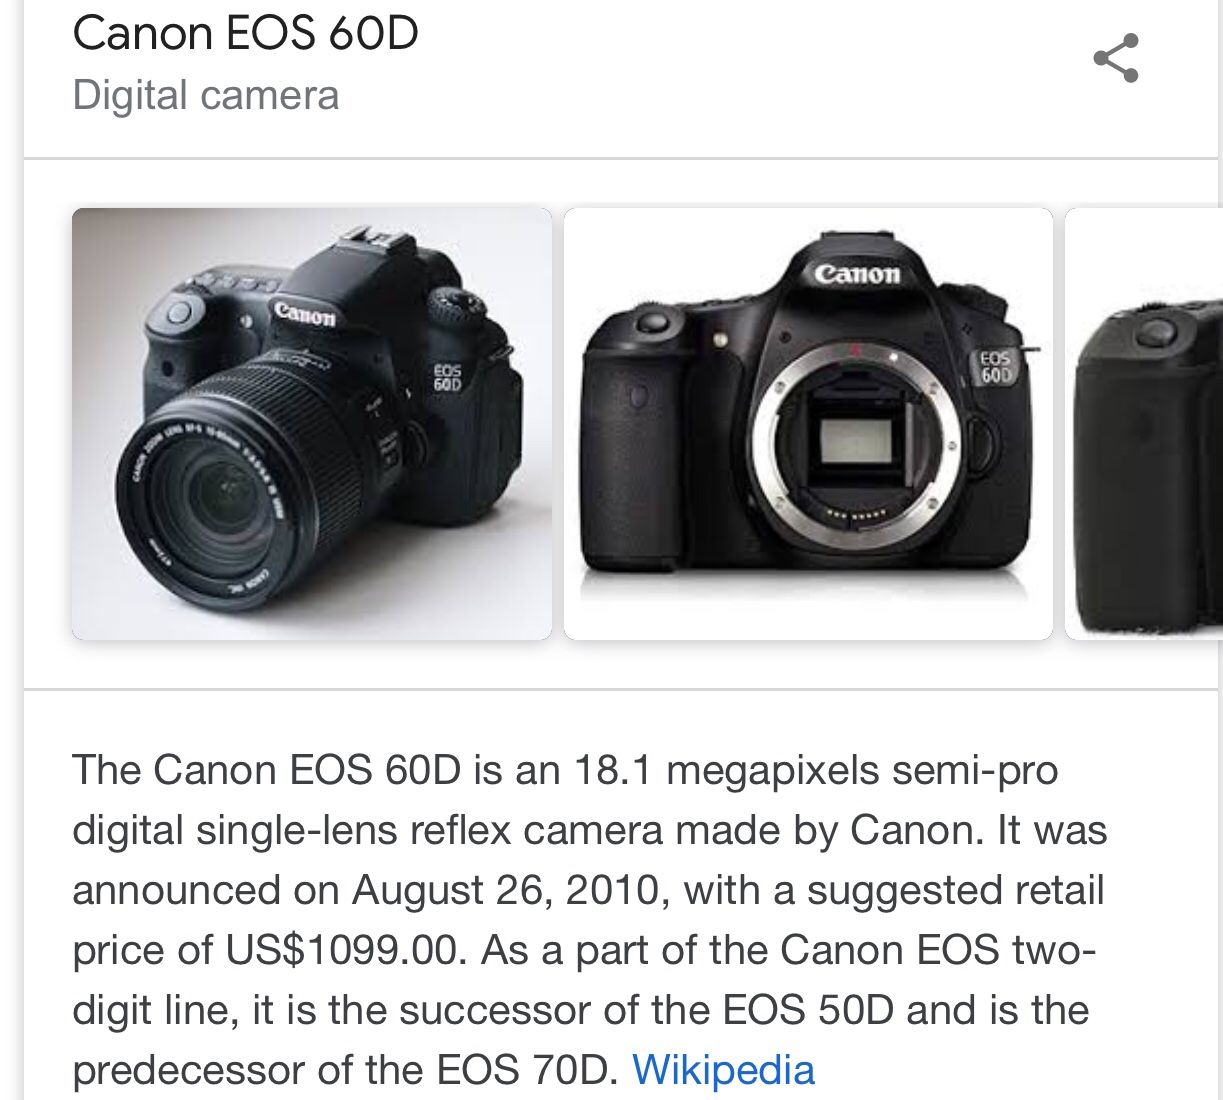 Canon 60D 18.1 megapixel digital camera bundle